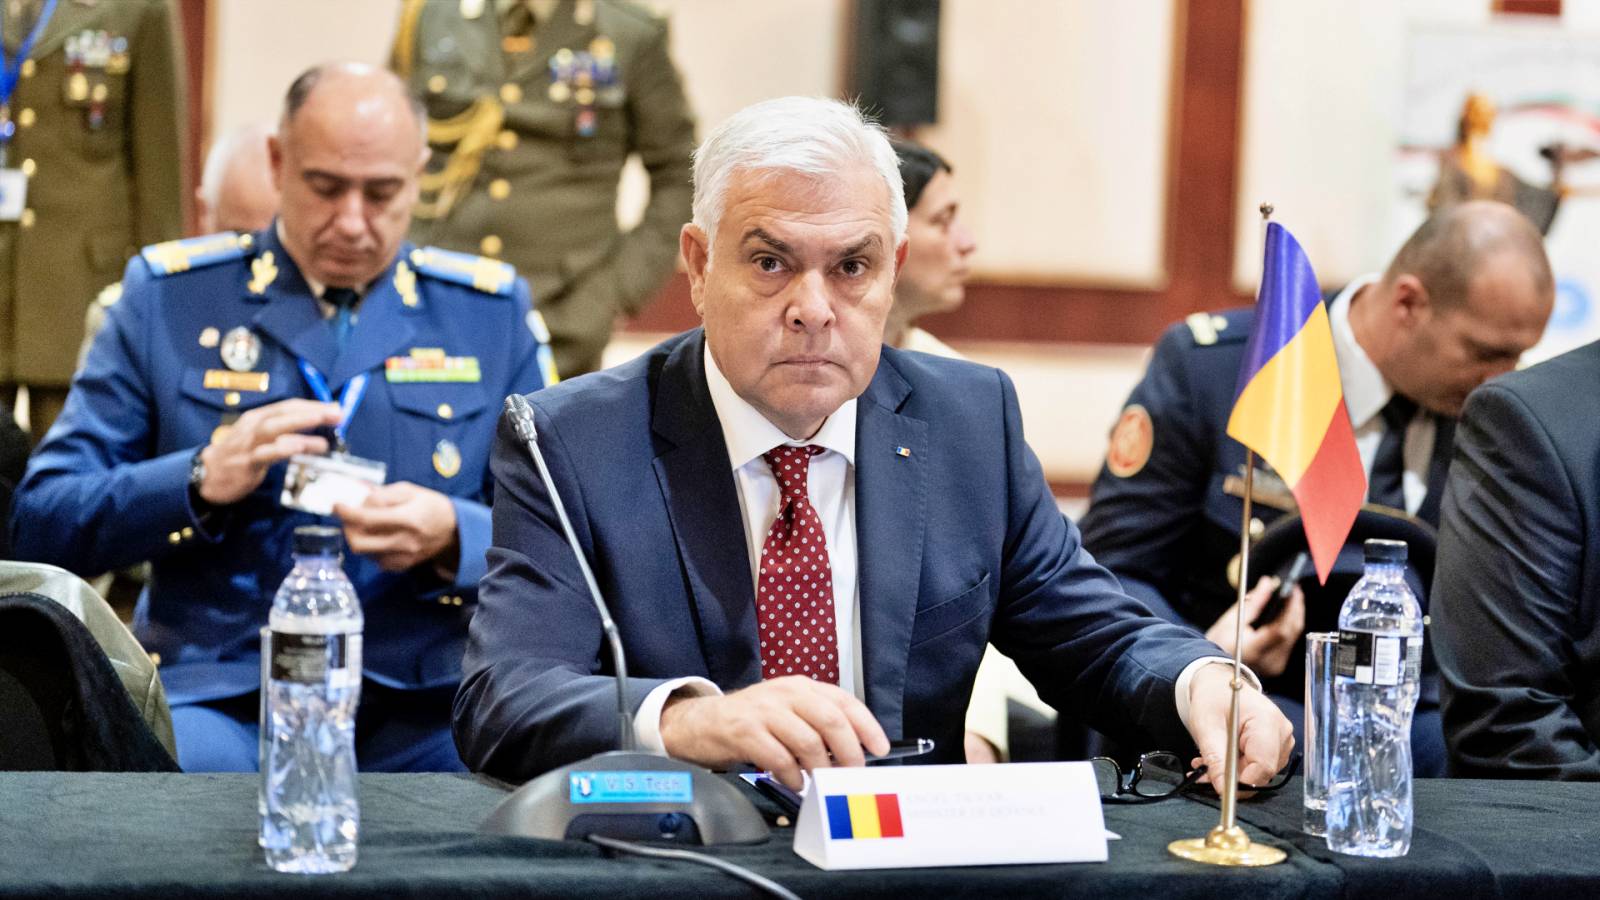 Le ministre de la Défense annonce des informations de dernière minute et transmet des informations importantes aux Roumains